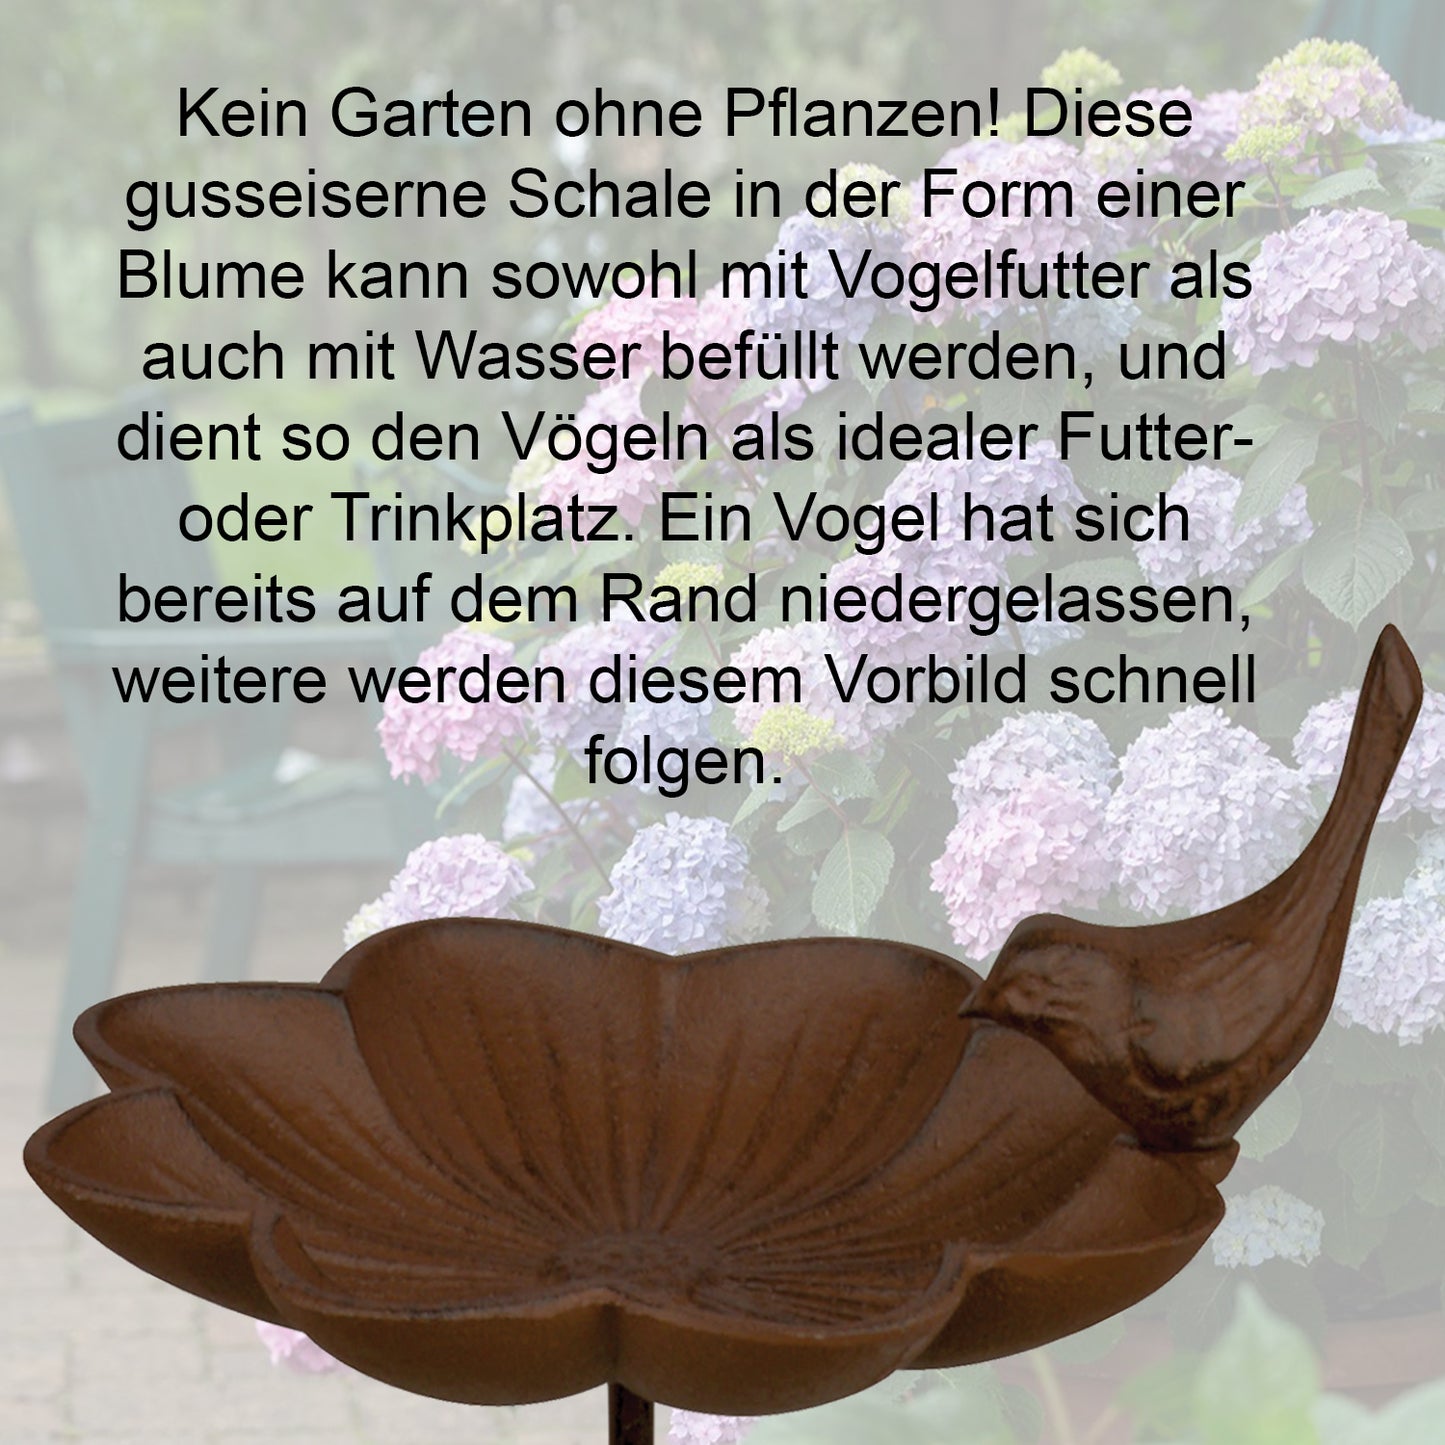 Vogeltränke auf Stab "Blume", Gusseisen, Ø 19,5 x H 91cm, braun